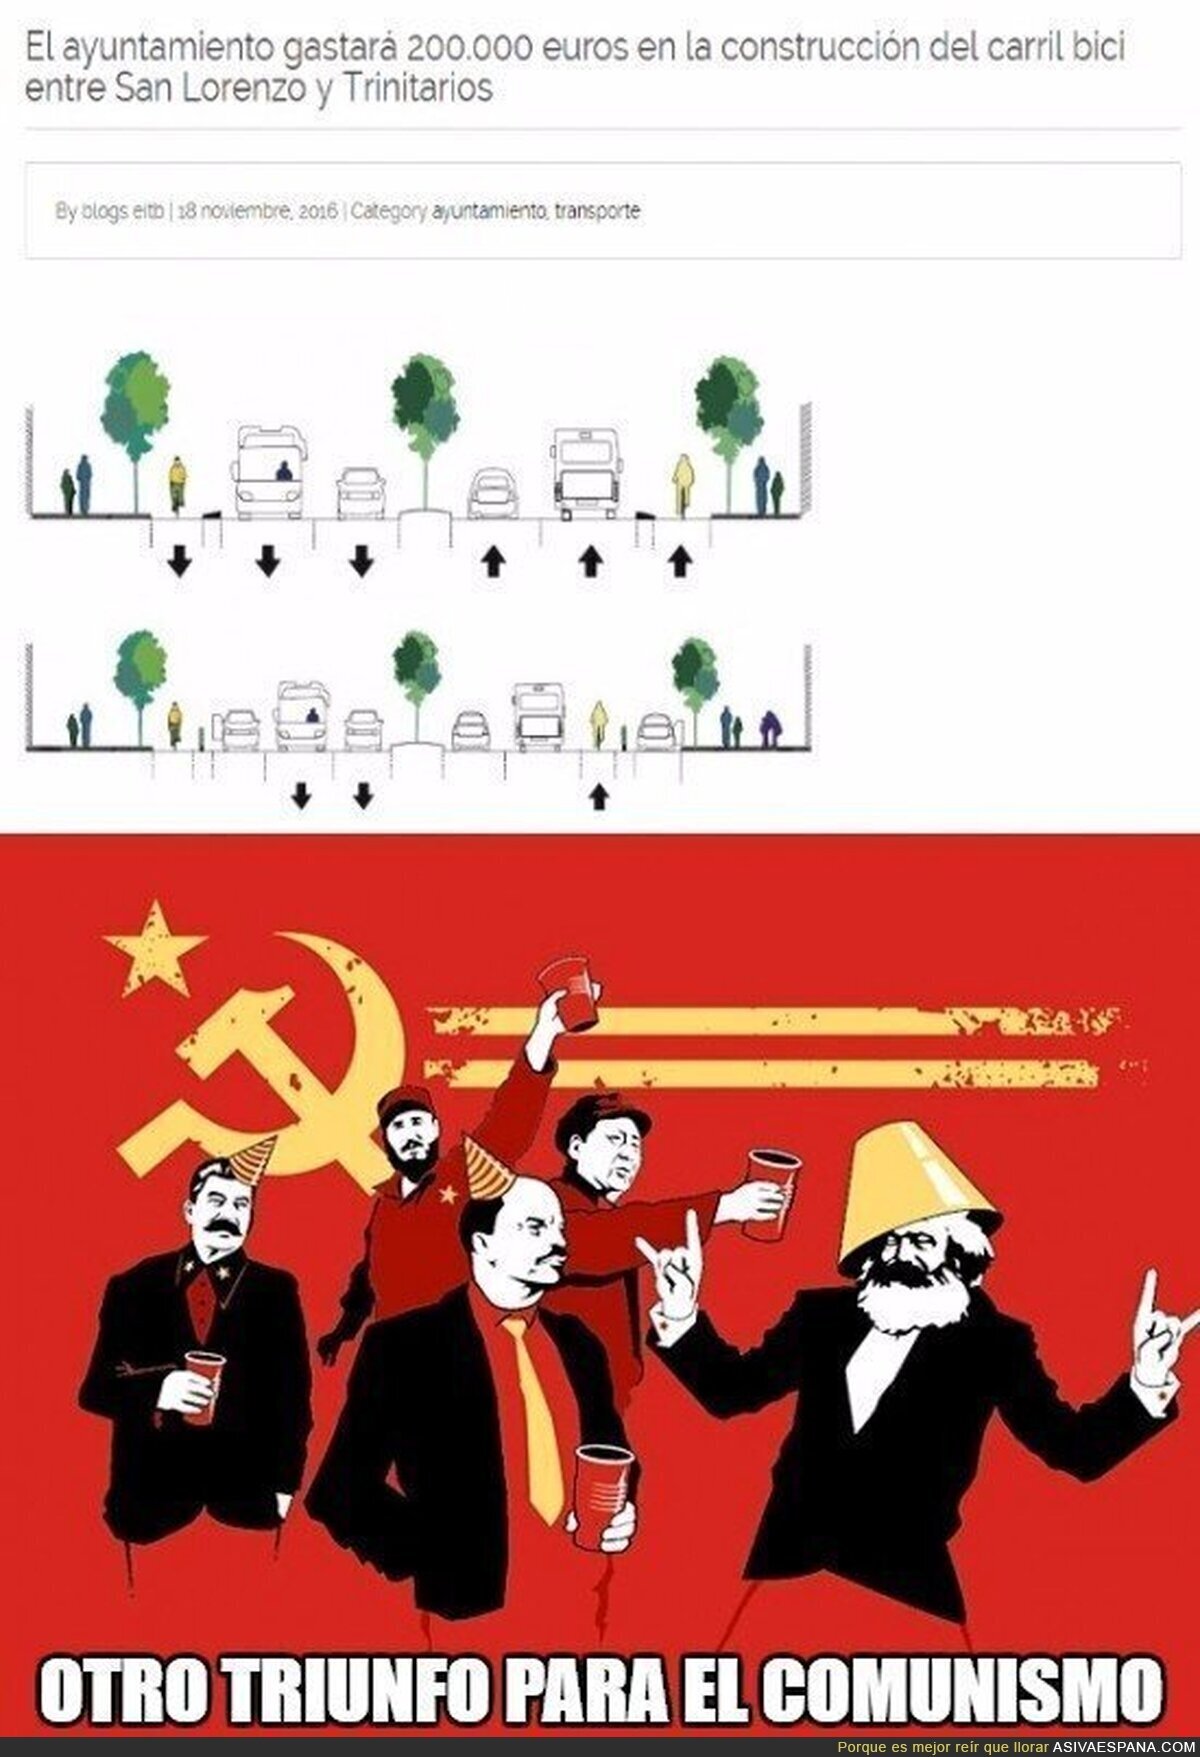 El comunismo sigue on fire